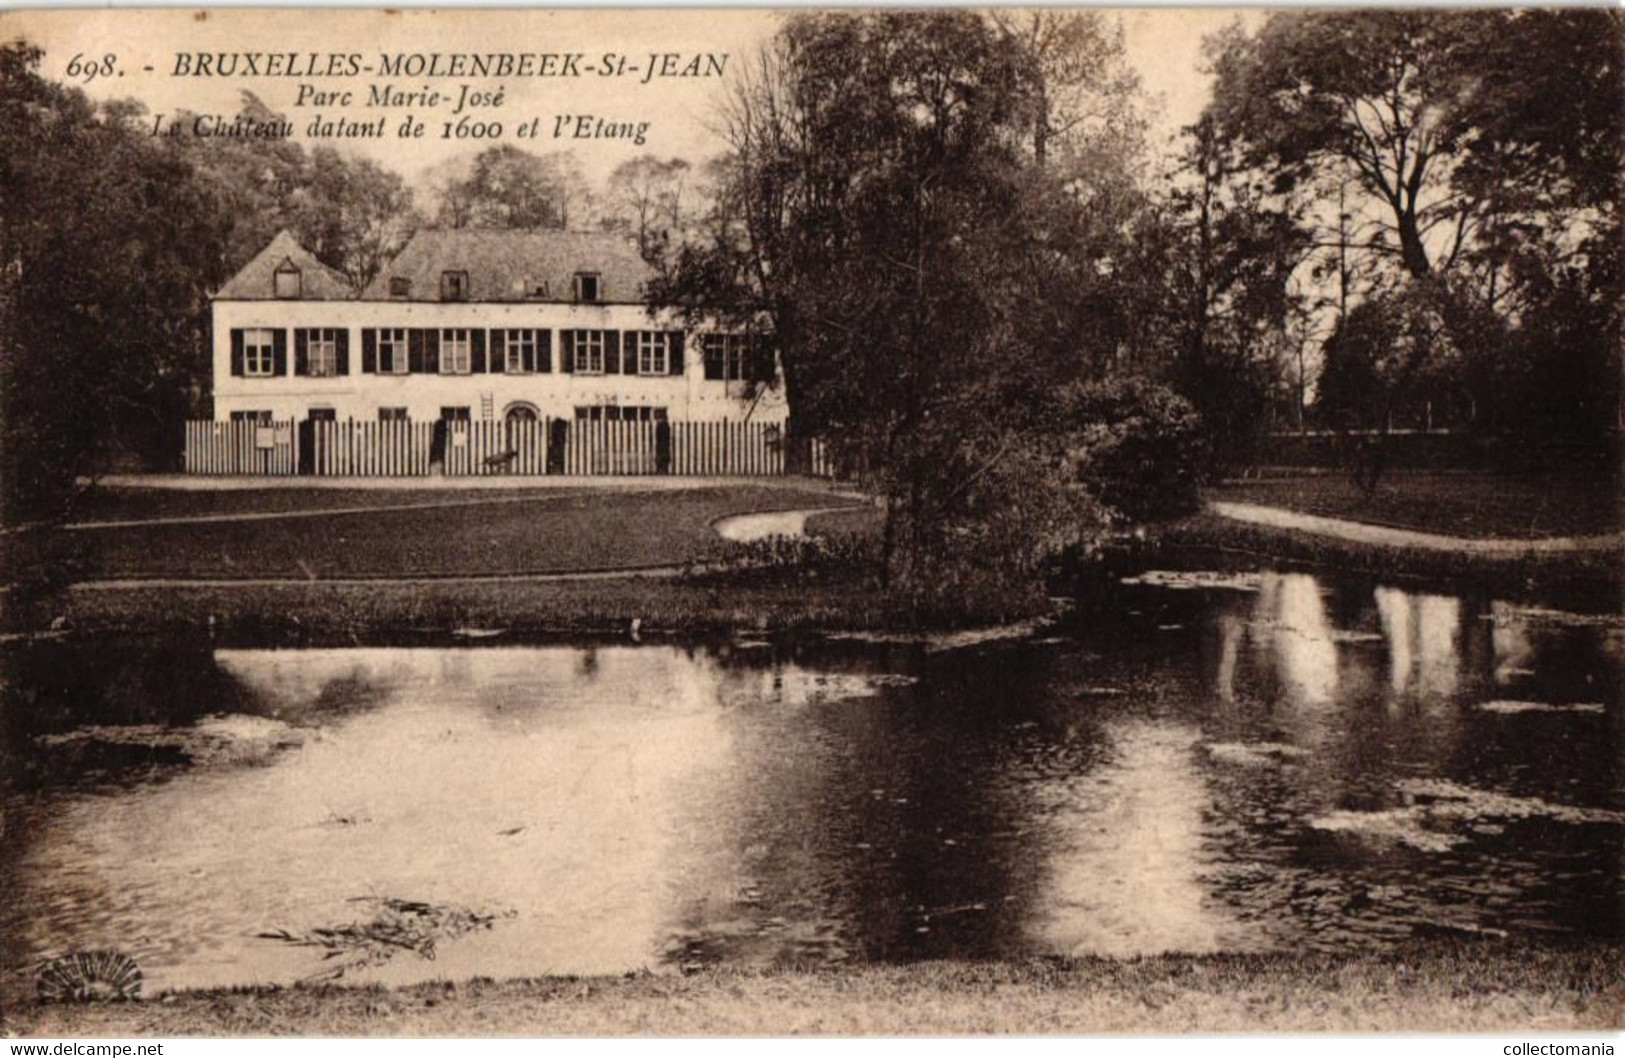 5 CP Molenbeek St.Jean  Parc Marie-José   L' Etang Le Château  Pont Rustique  1923  1929 - Molenbeek-St-Jean - St-Jans-Molenbeek